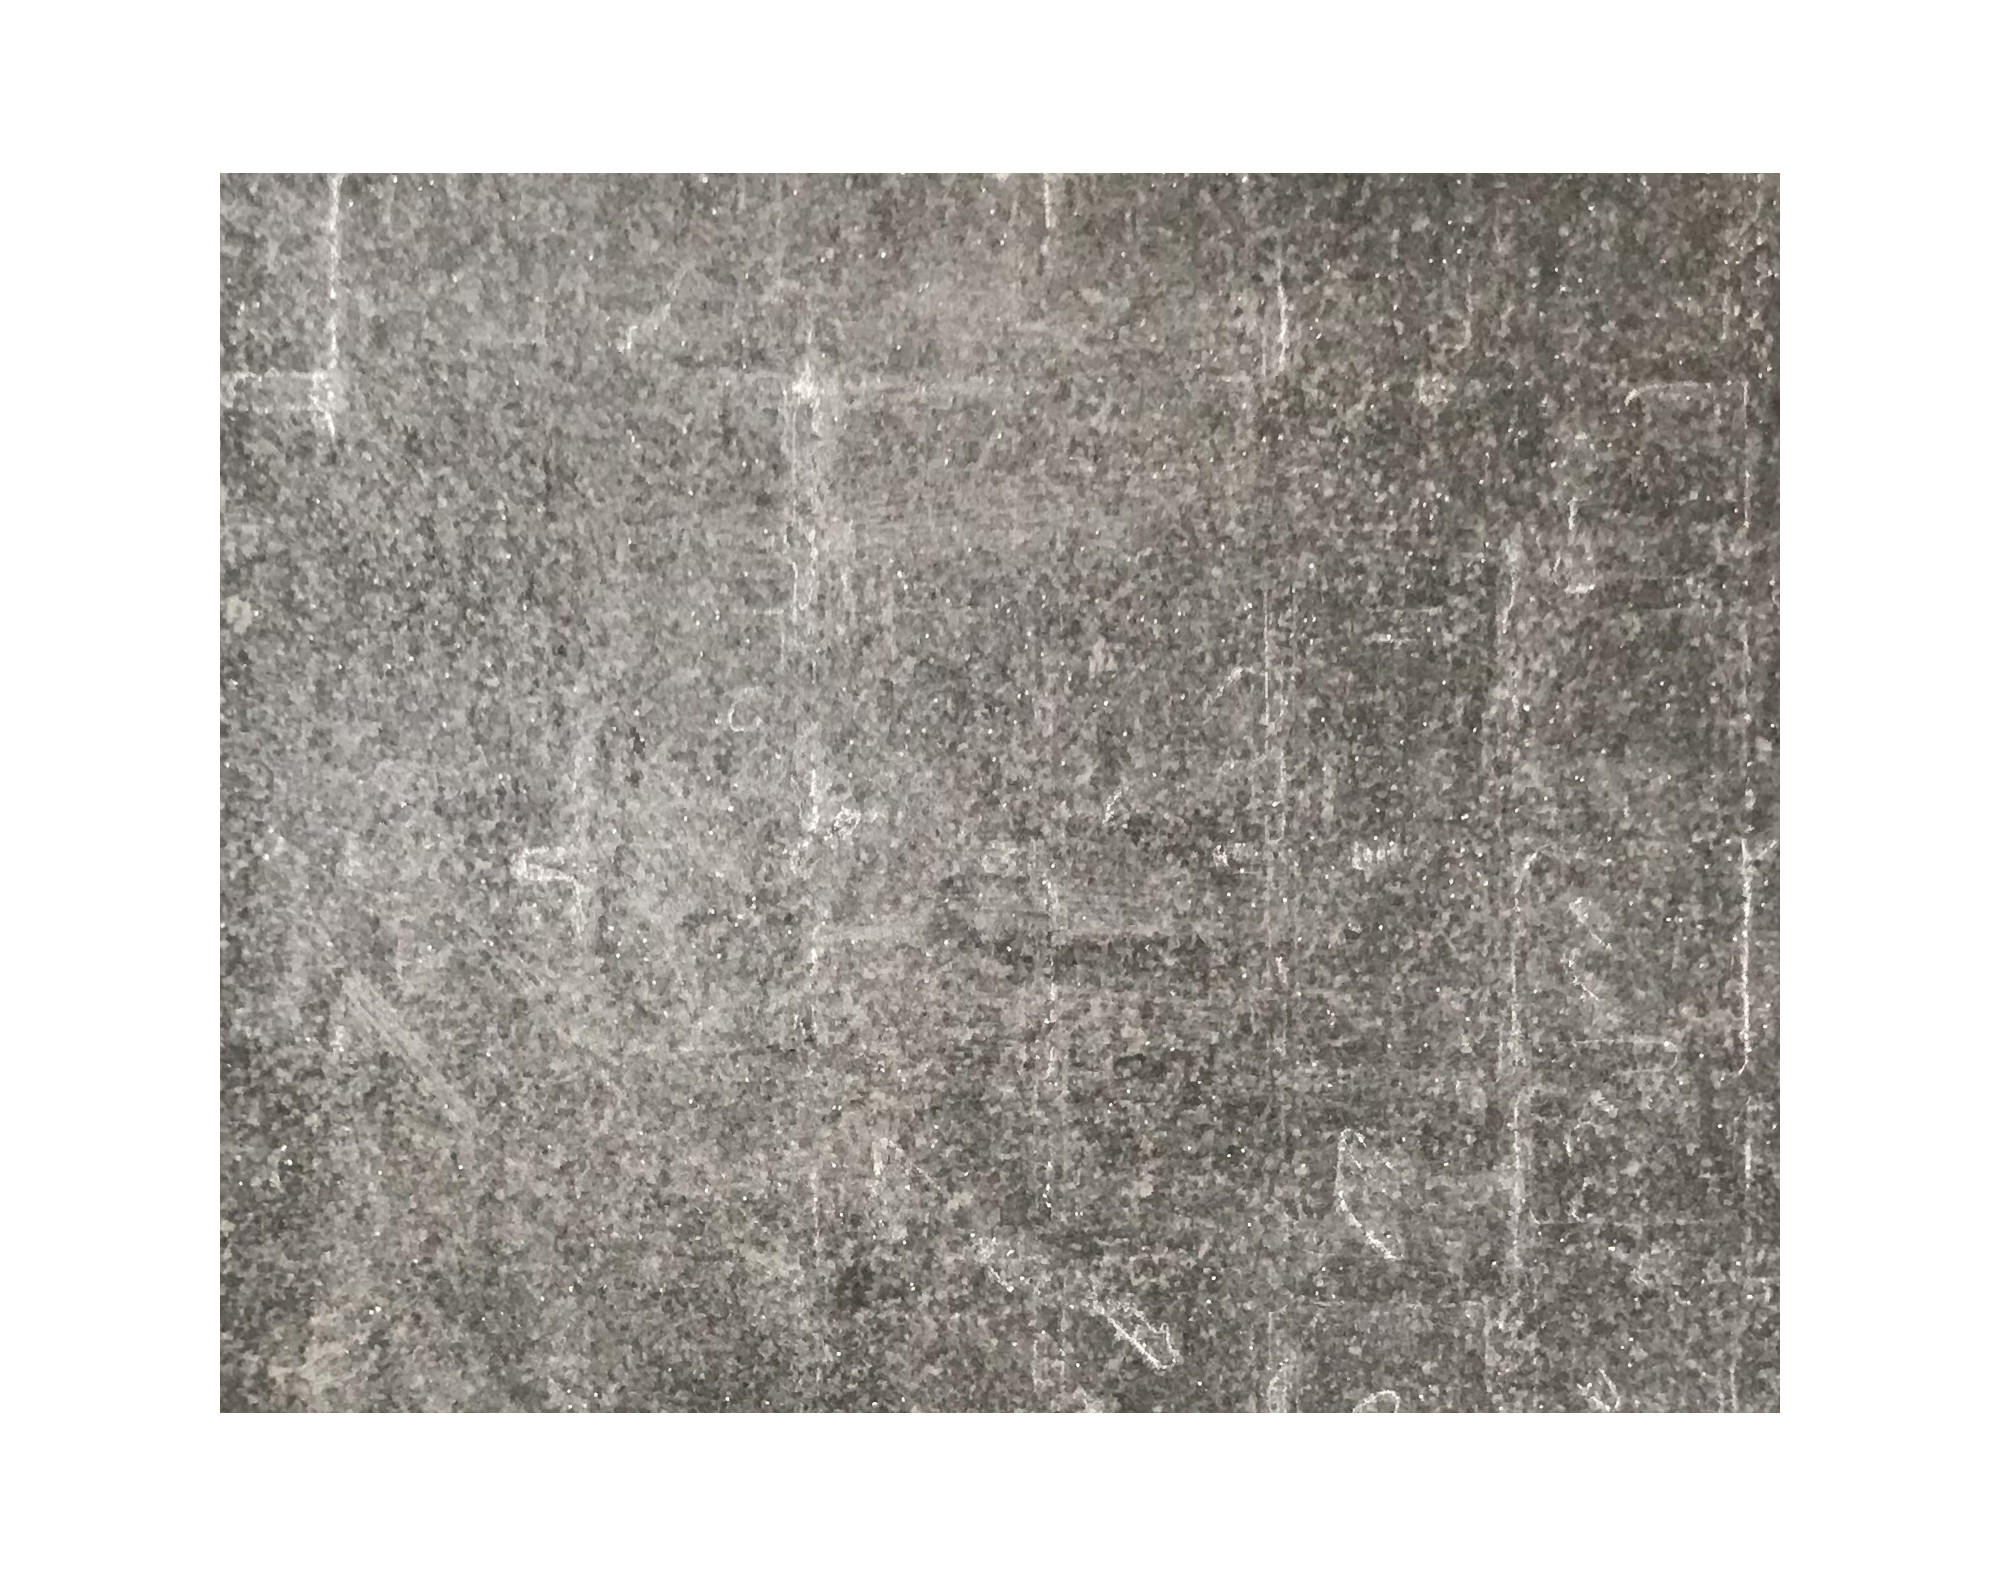 Harmo roc maranelloset, keramiek-serie, ovaal d: 3,50mx7,50m, zand zwart, keramisch porselein